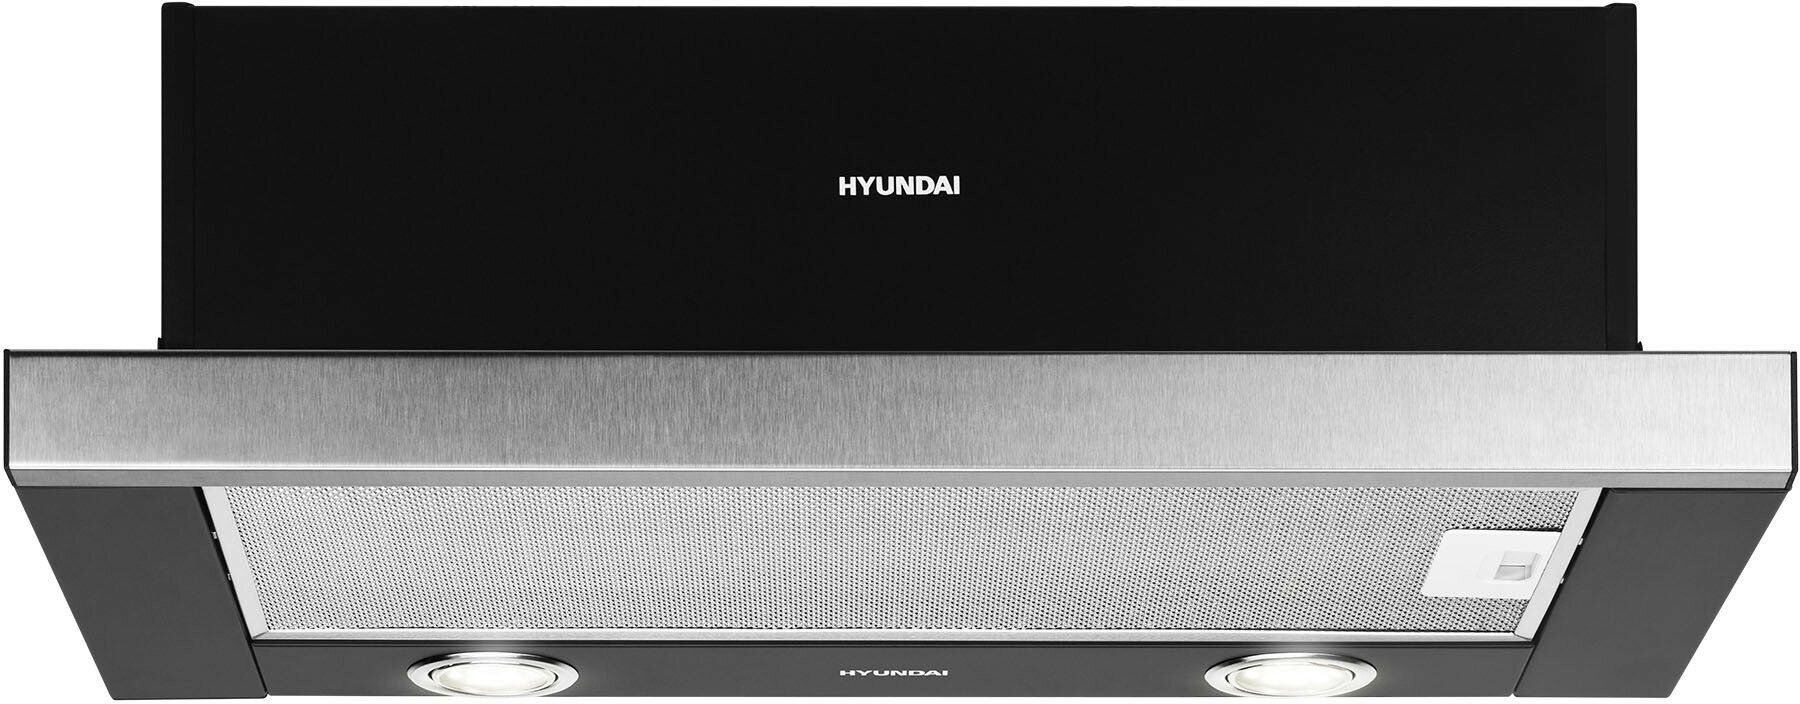 Встраиваемая вытяжка Hyundai HBH 6232 IX